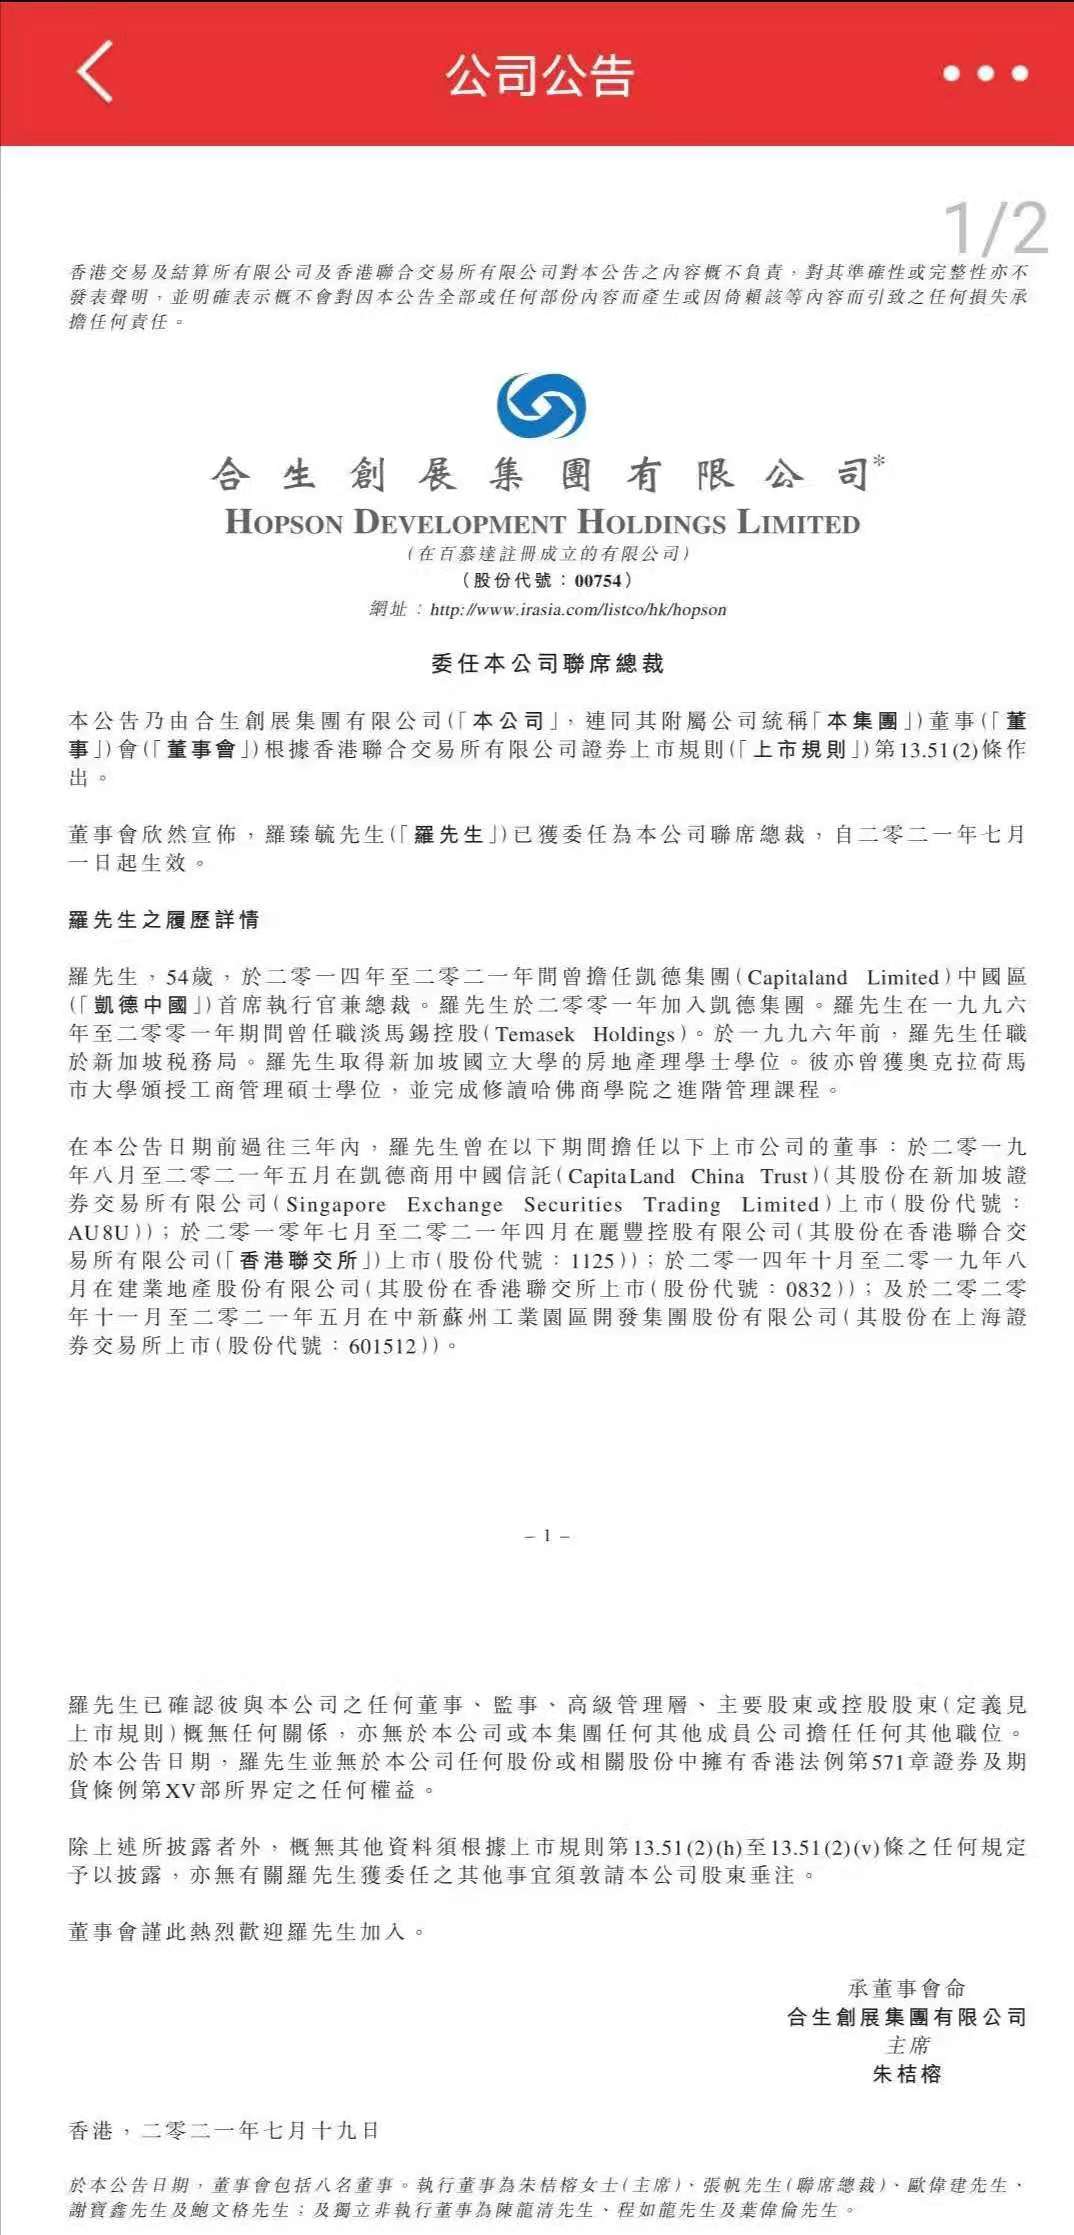 合生创展集团委任罗臻毓为联席总裁7月1日起生效